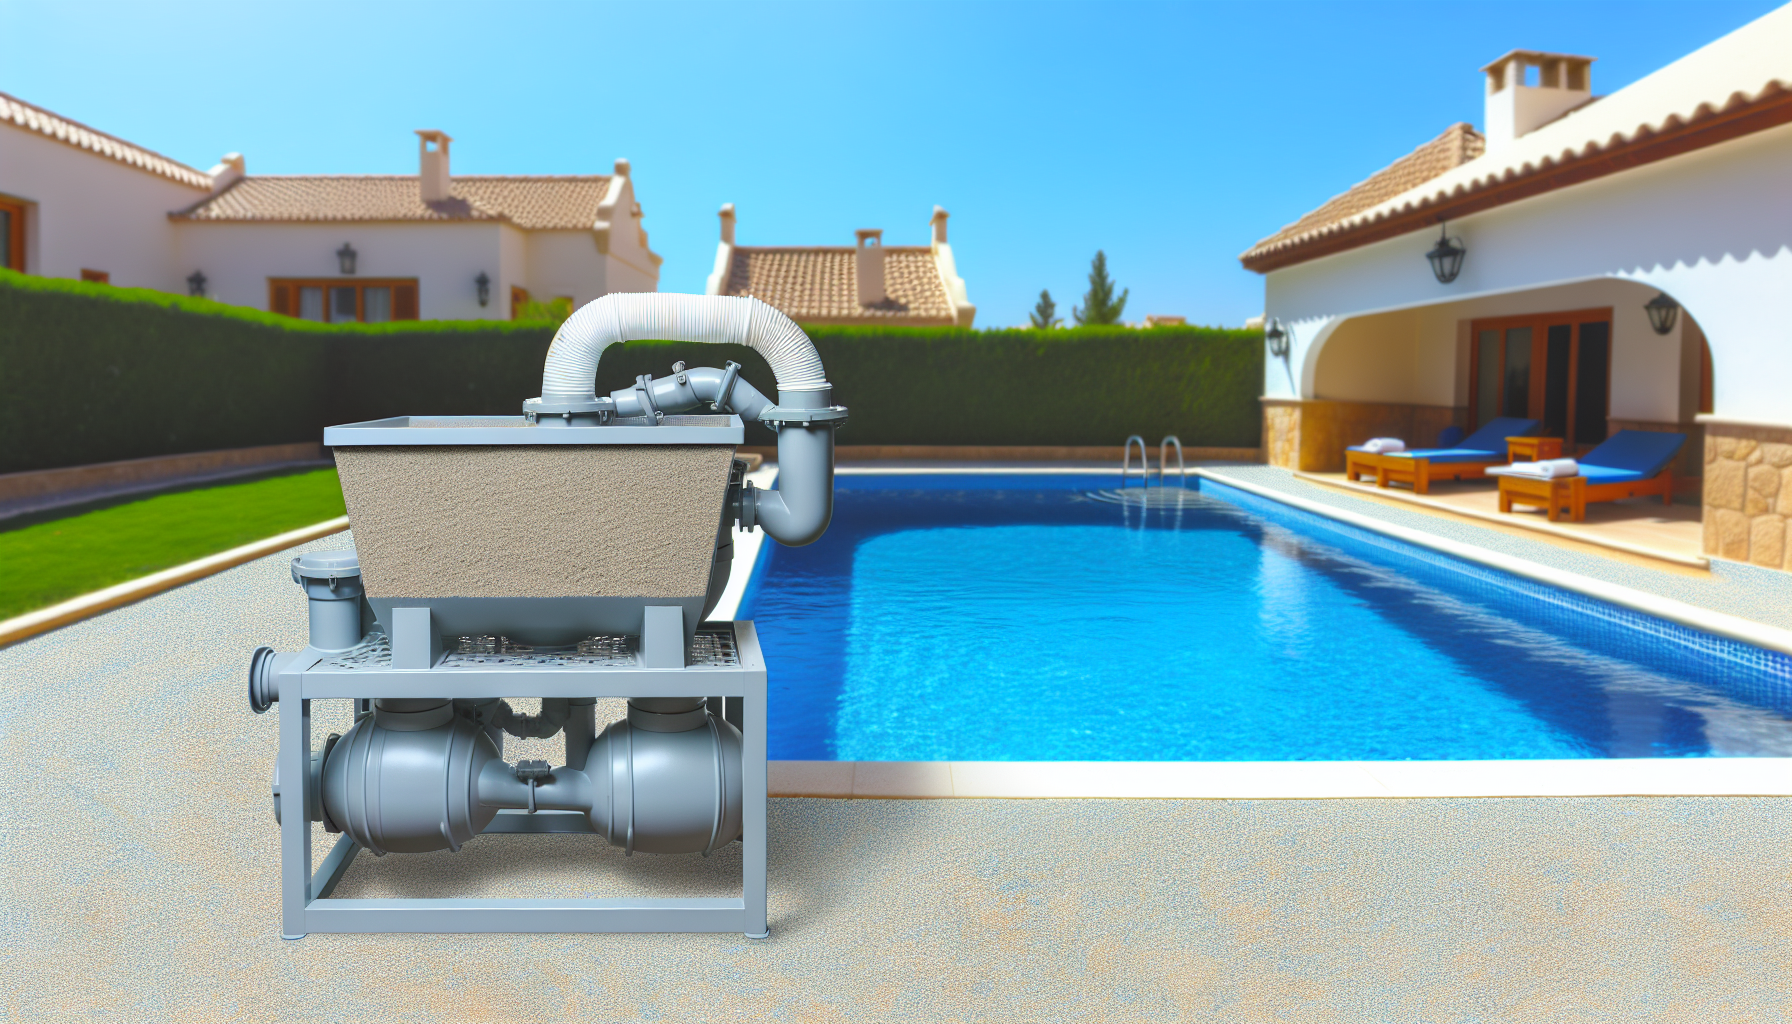 Poolpumpe und Filter vor einem privaten Swimmingpool mit Liegestühlen und Wohngebäuden im Hintergrund.